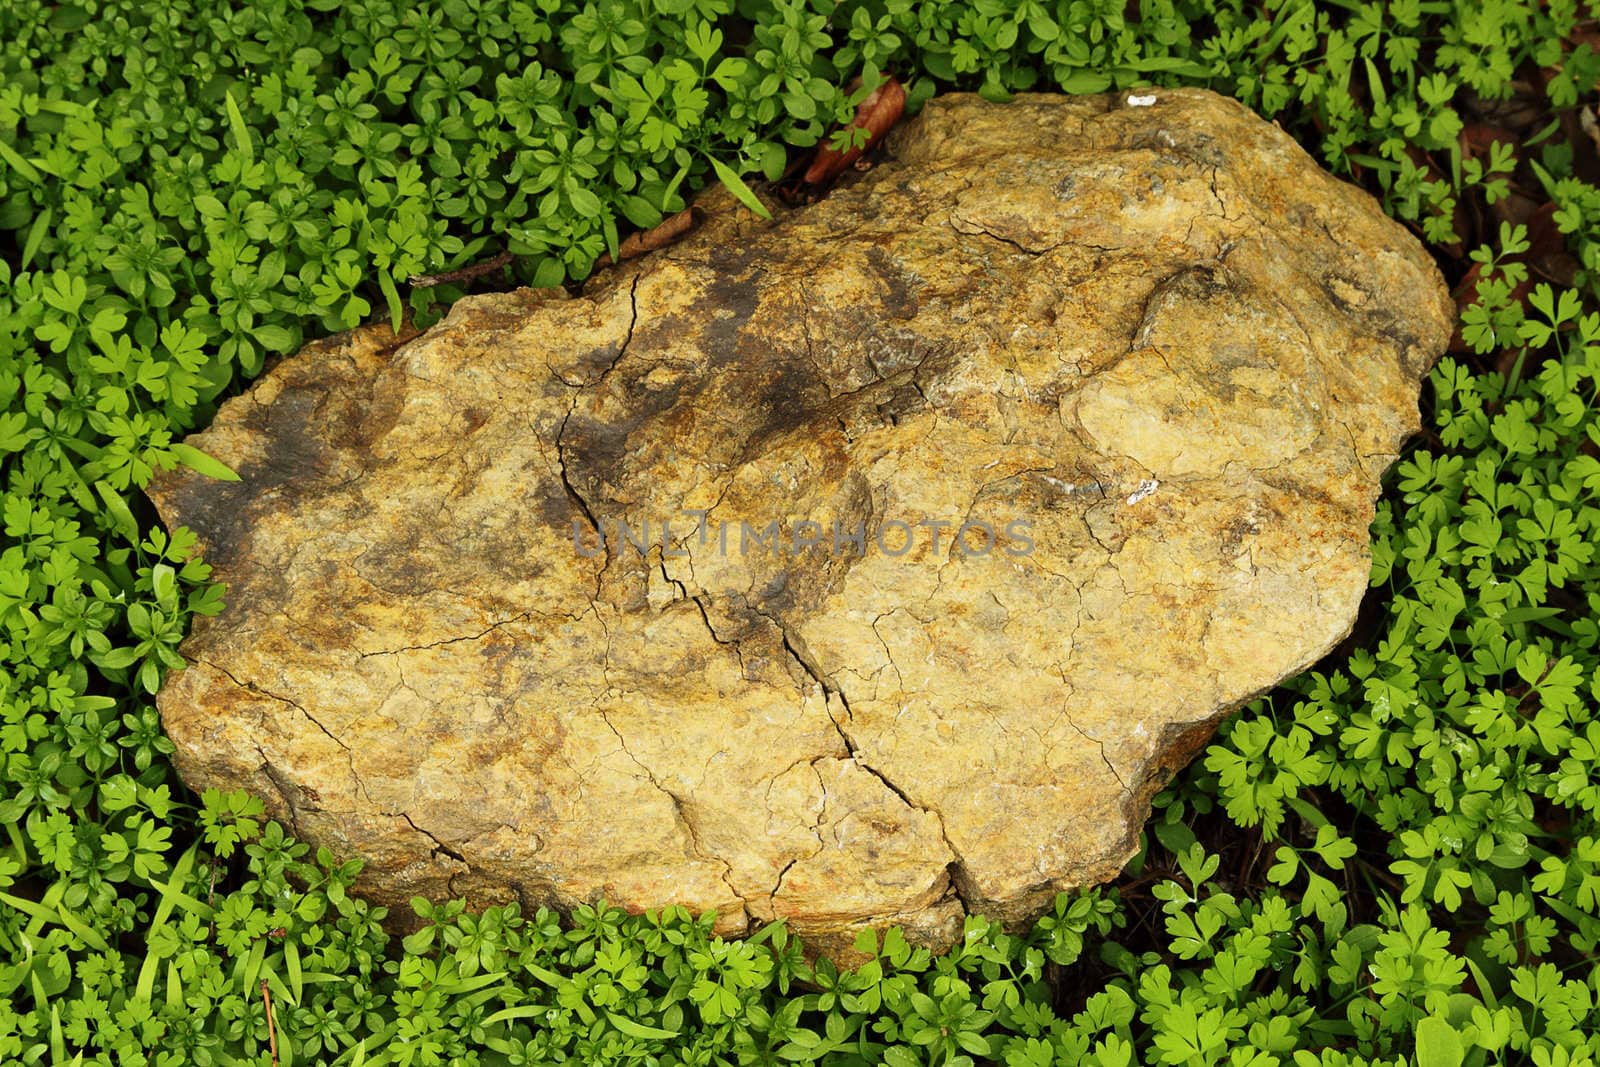 A rock among grass by pulen